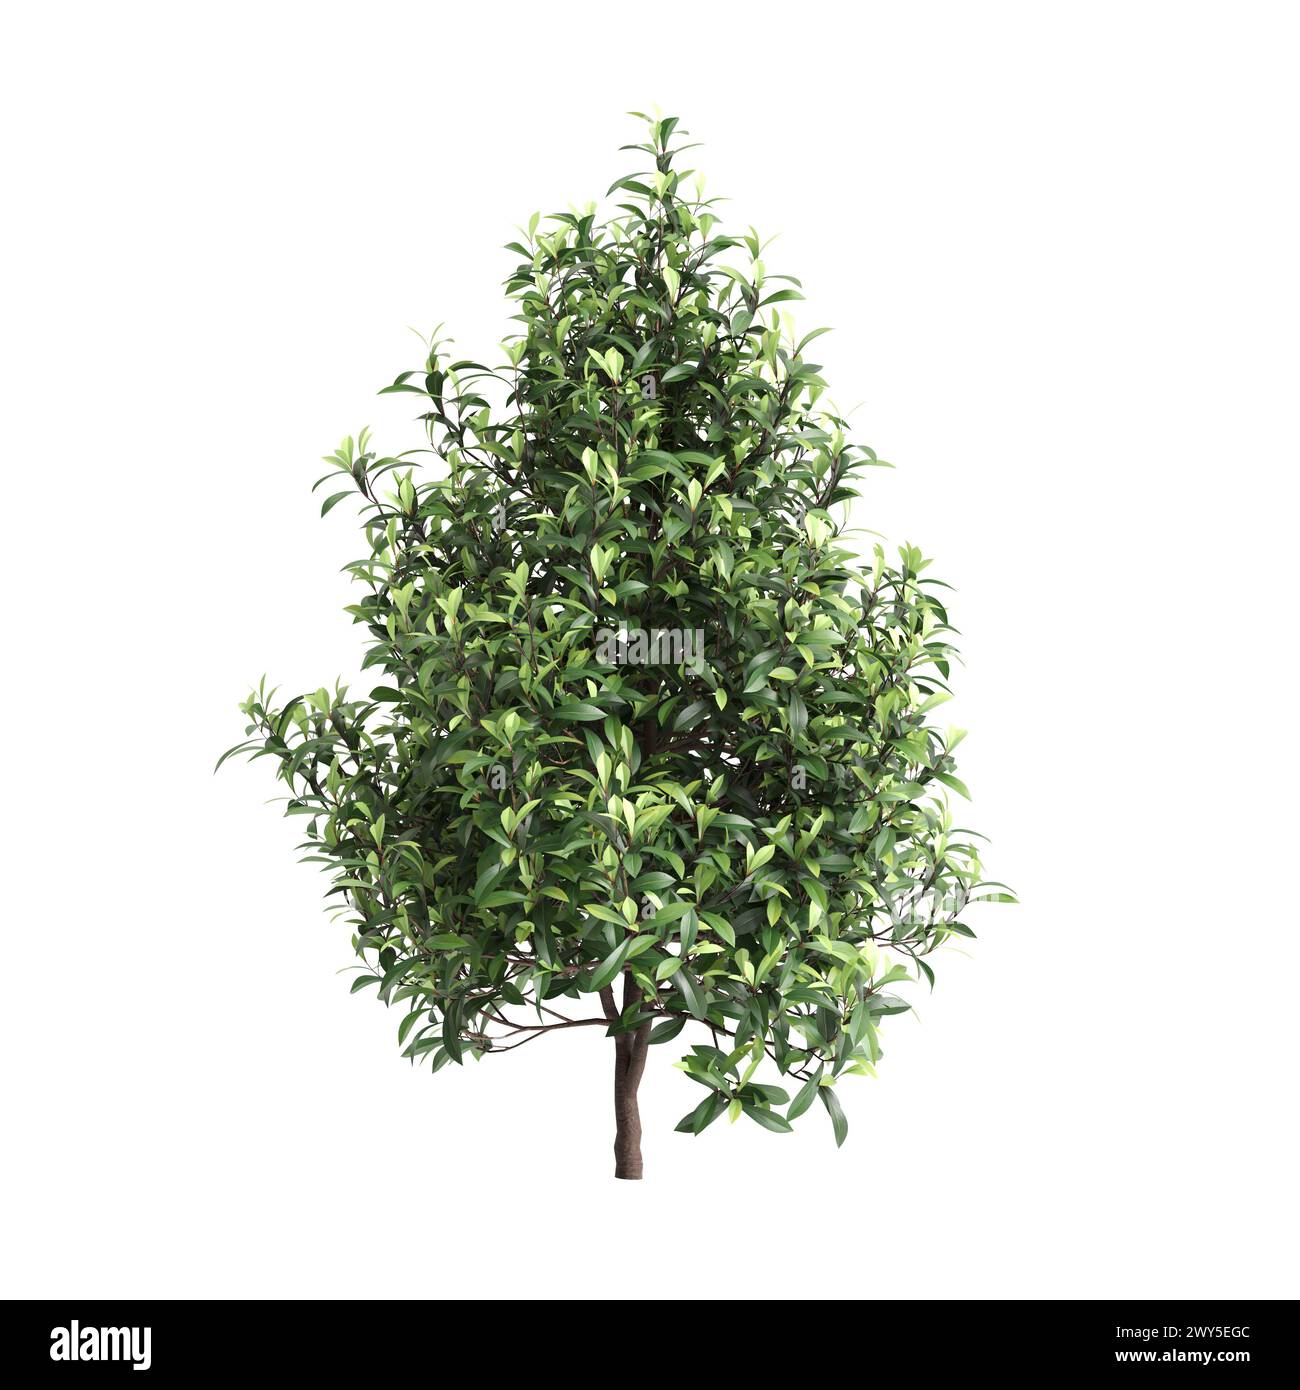 3d illustration of Tasmannia purpurascens tree isolated on black background Stock Photo